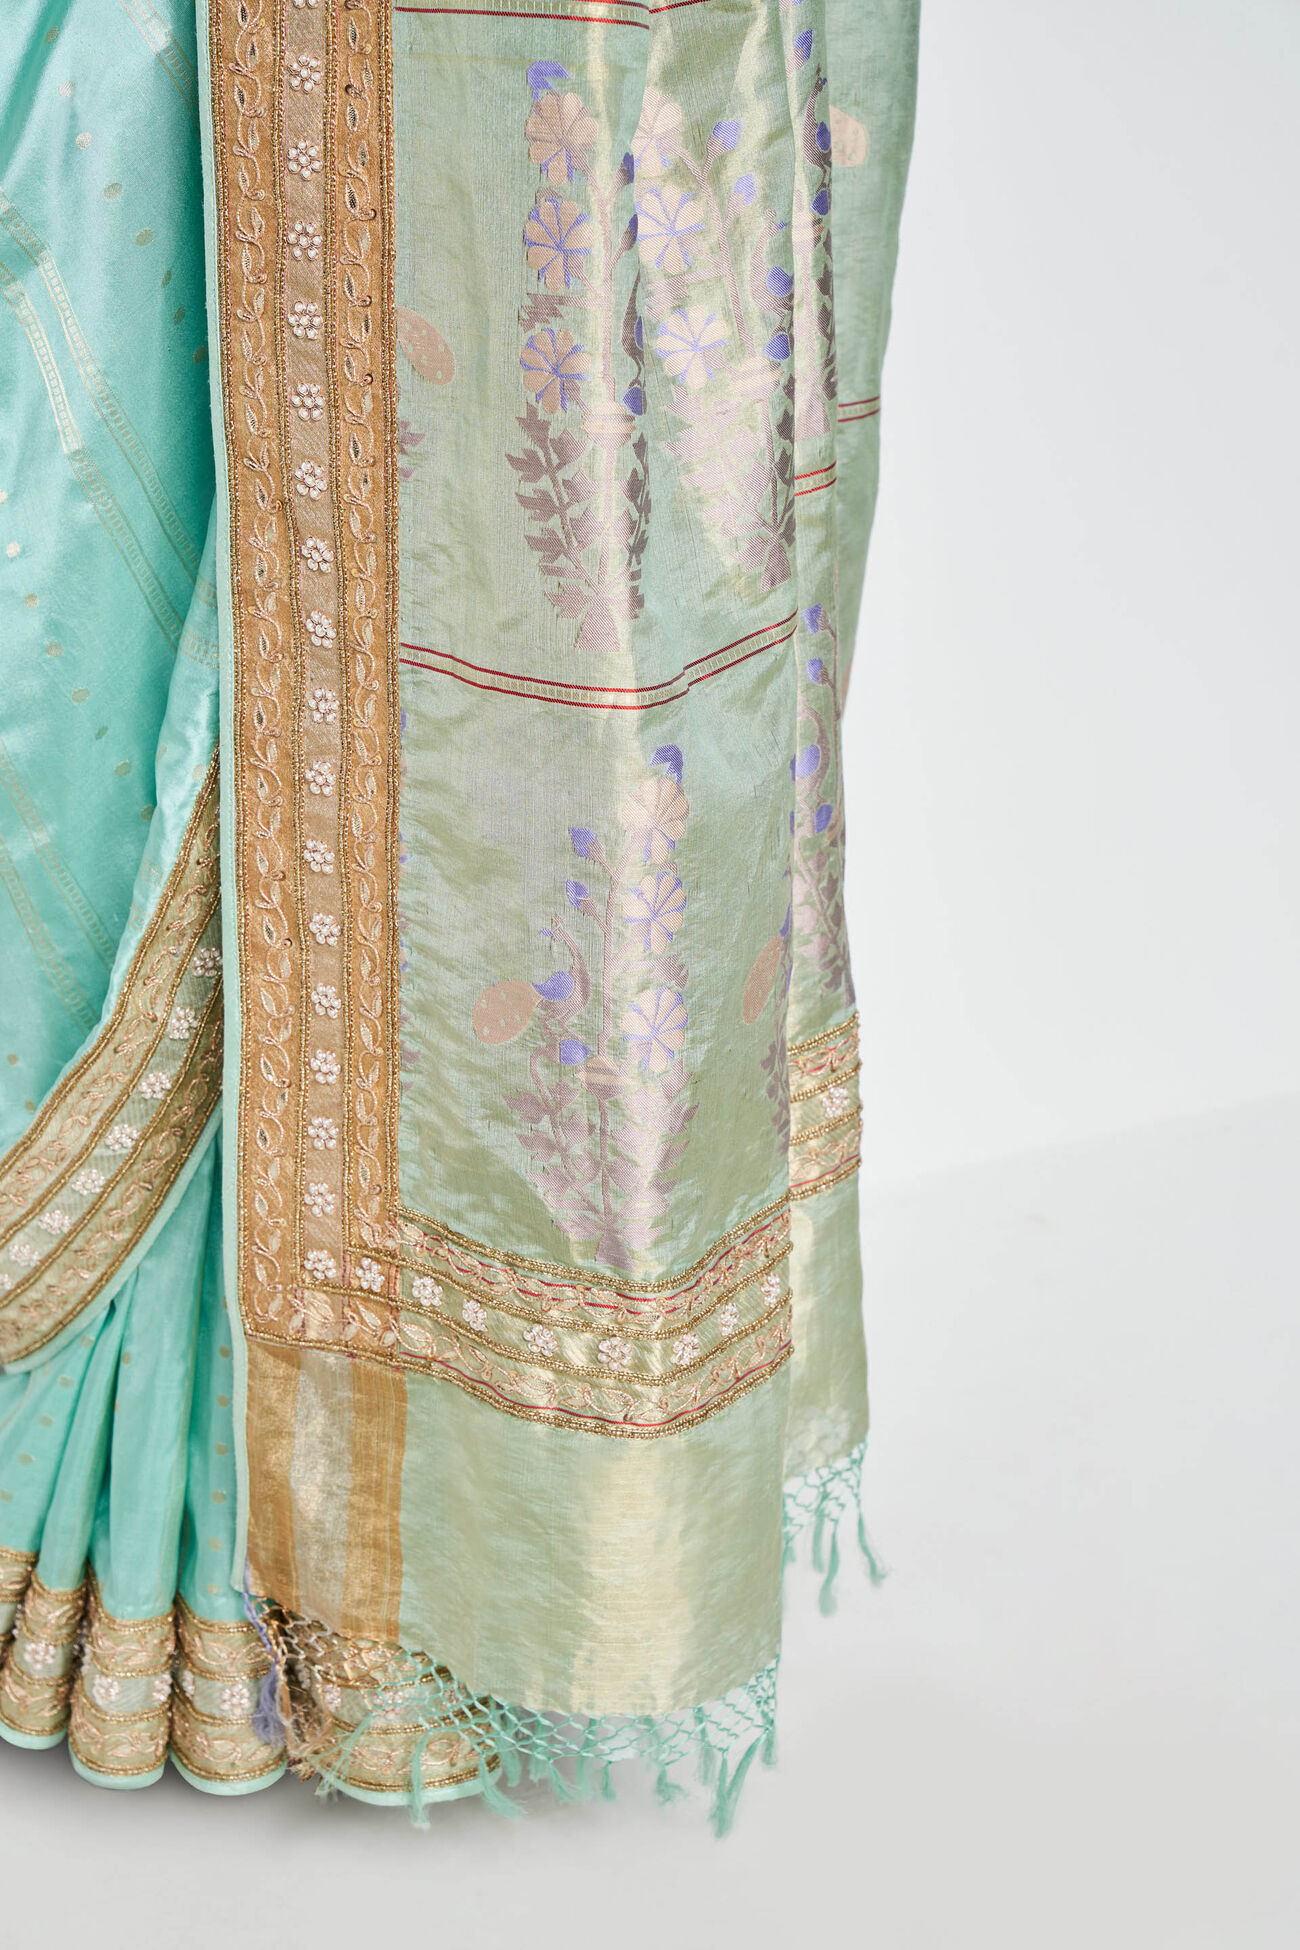 Mithila Benarasi Silk Embroidered Saree - Powder Blue, Powder Blue, image 5